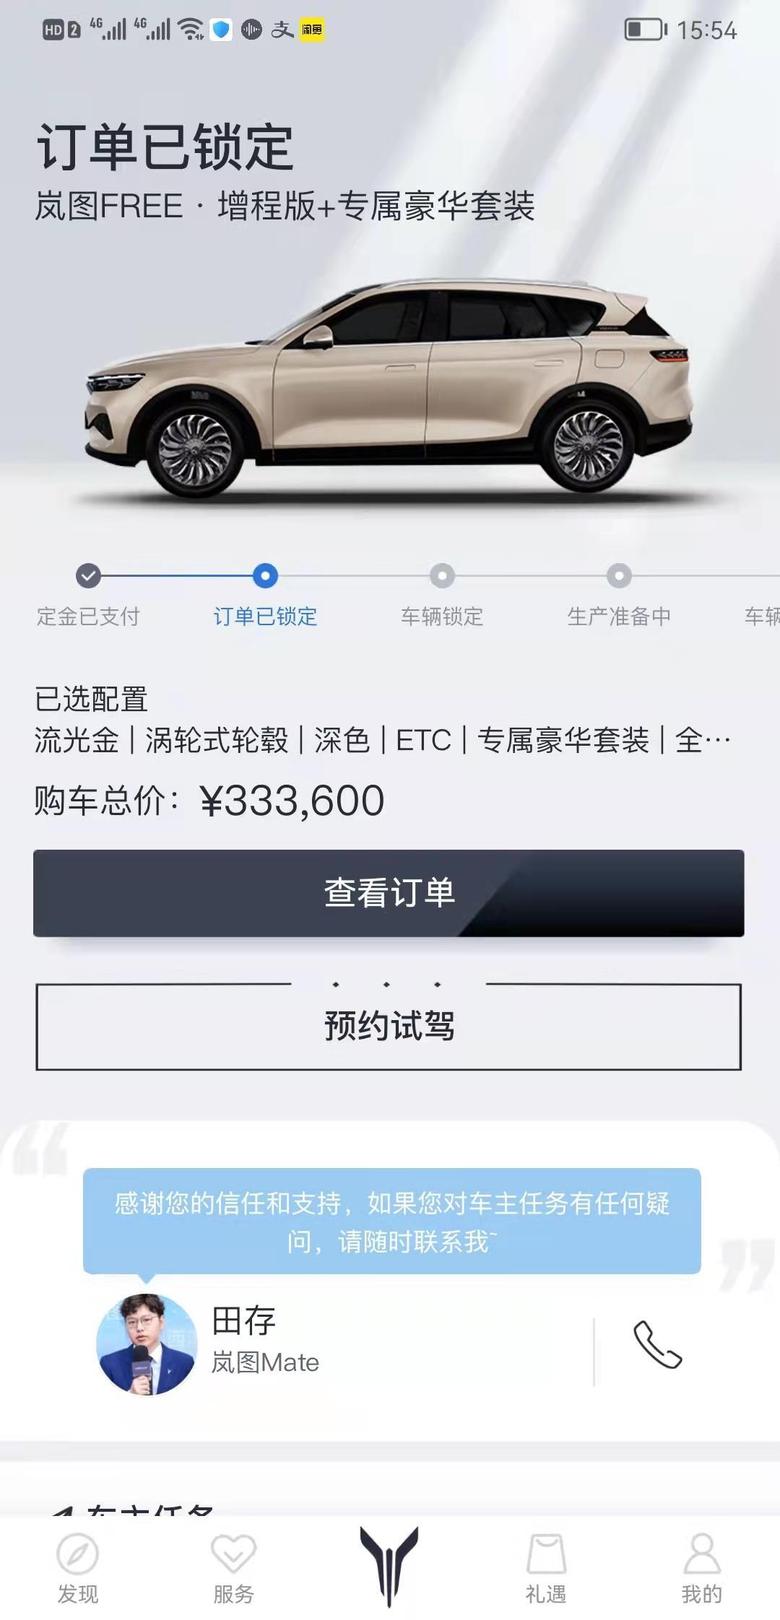 岚图free岚图生产提速了，我是11月初锁定订单，昨天销售说月底就能提车了，年前岚图要交付7000辆，12月杭州就要交付300辆。